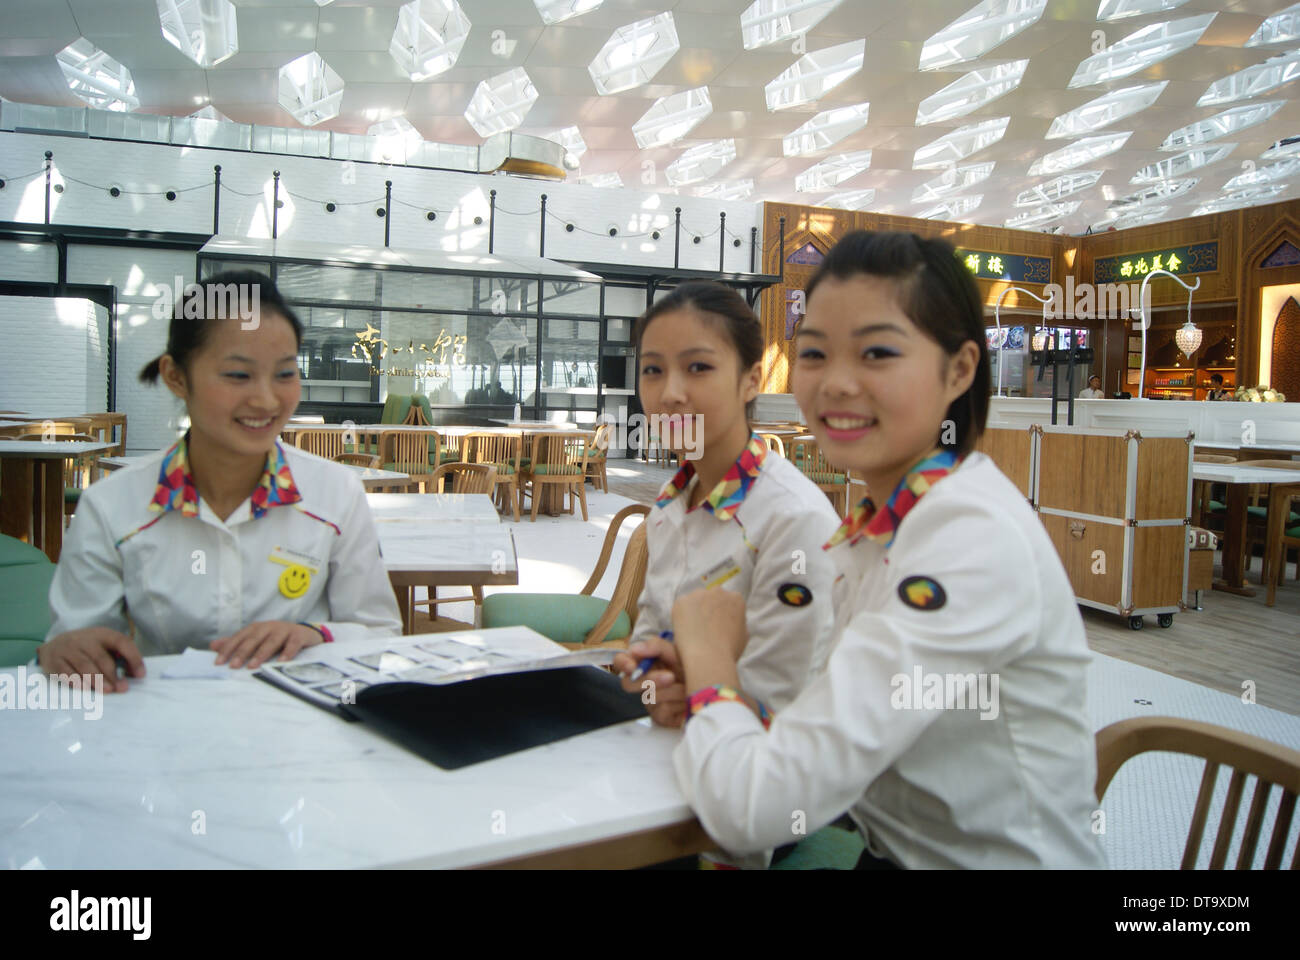 Working in restaurants China girl Stock Photo